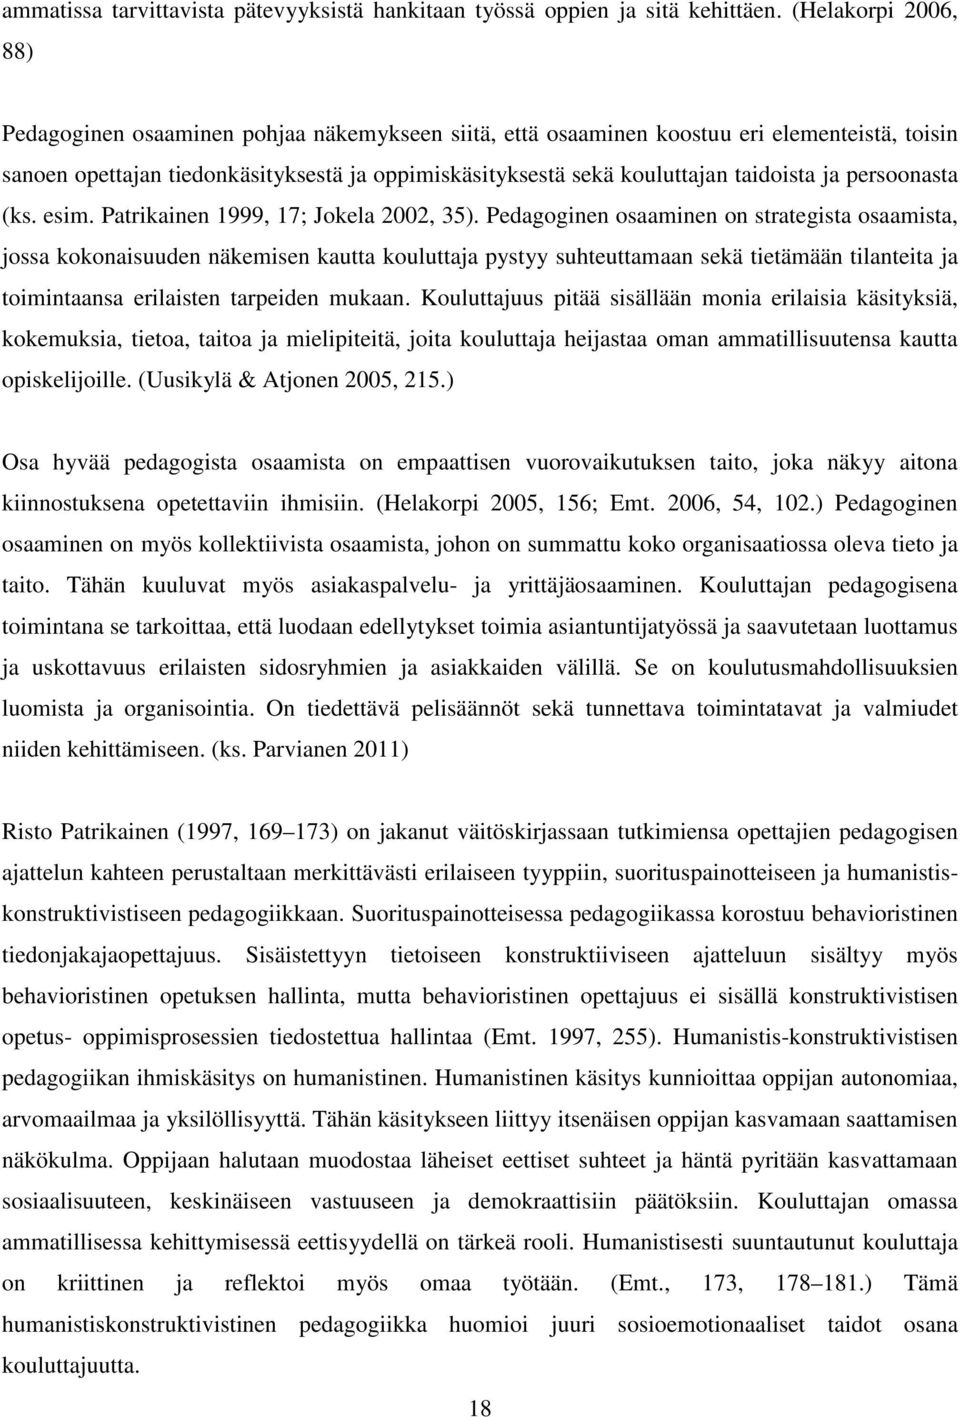 taidoista ja persoonasta (ks. esim. Patrikainen 1999, 17; Jokela 2002, 35).